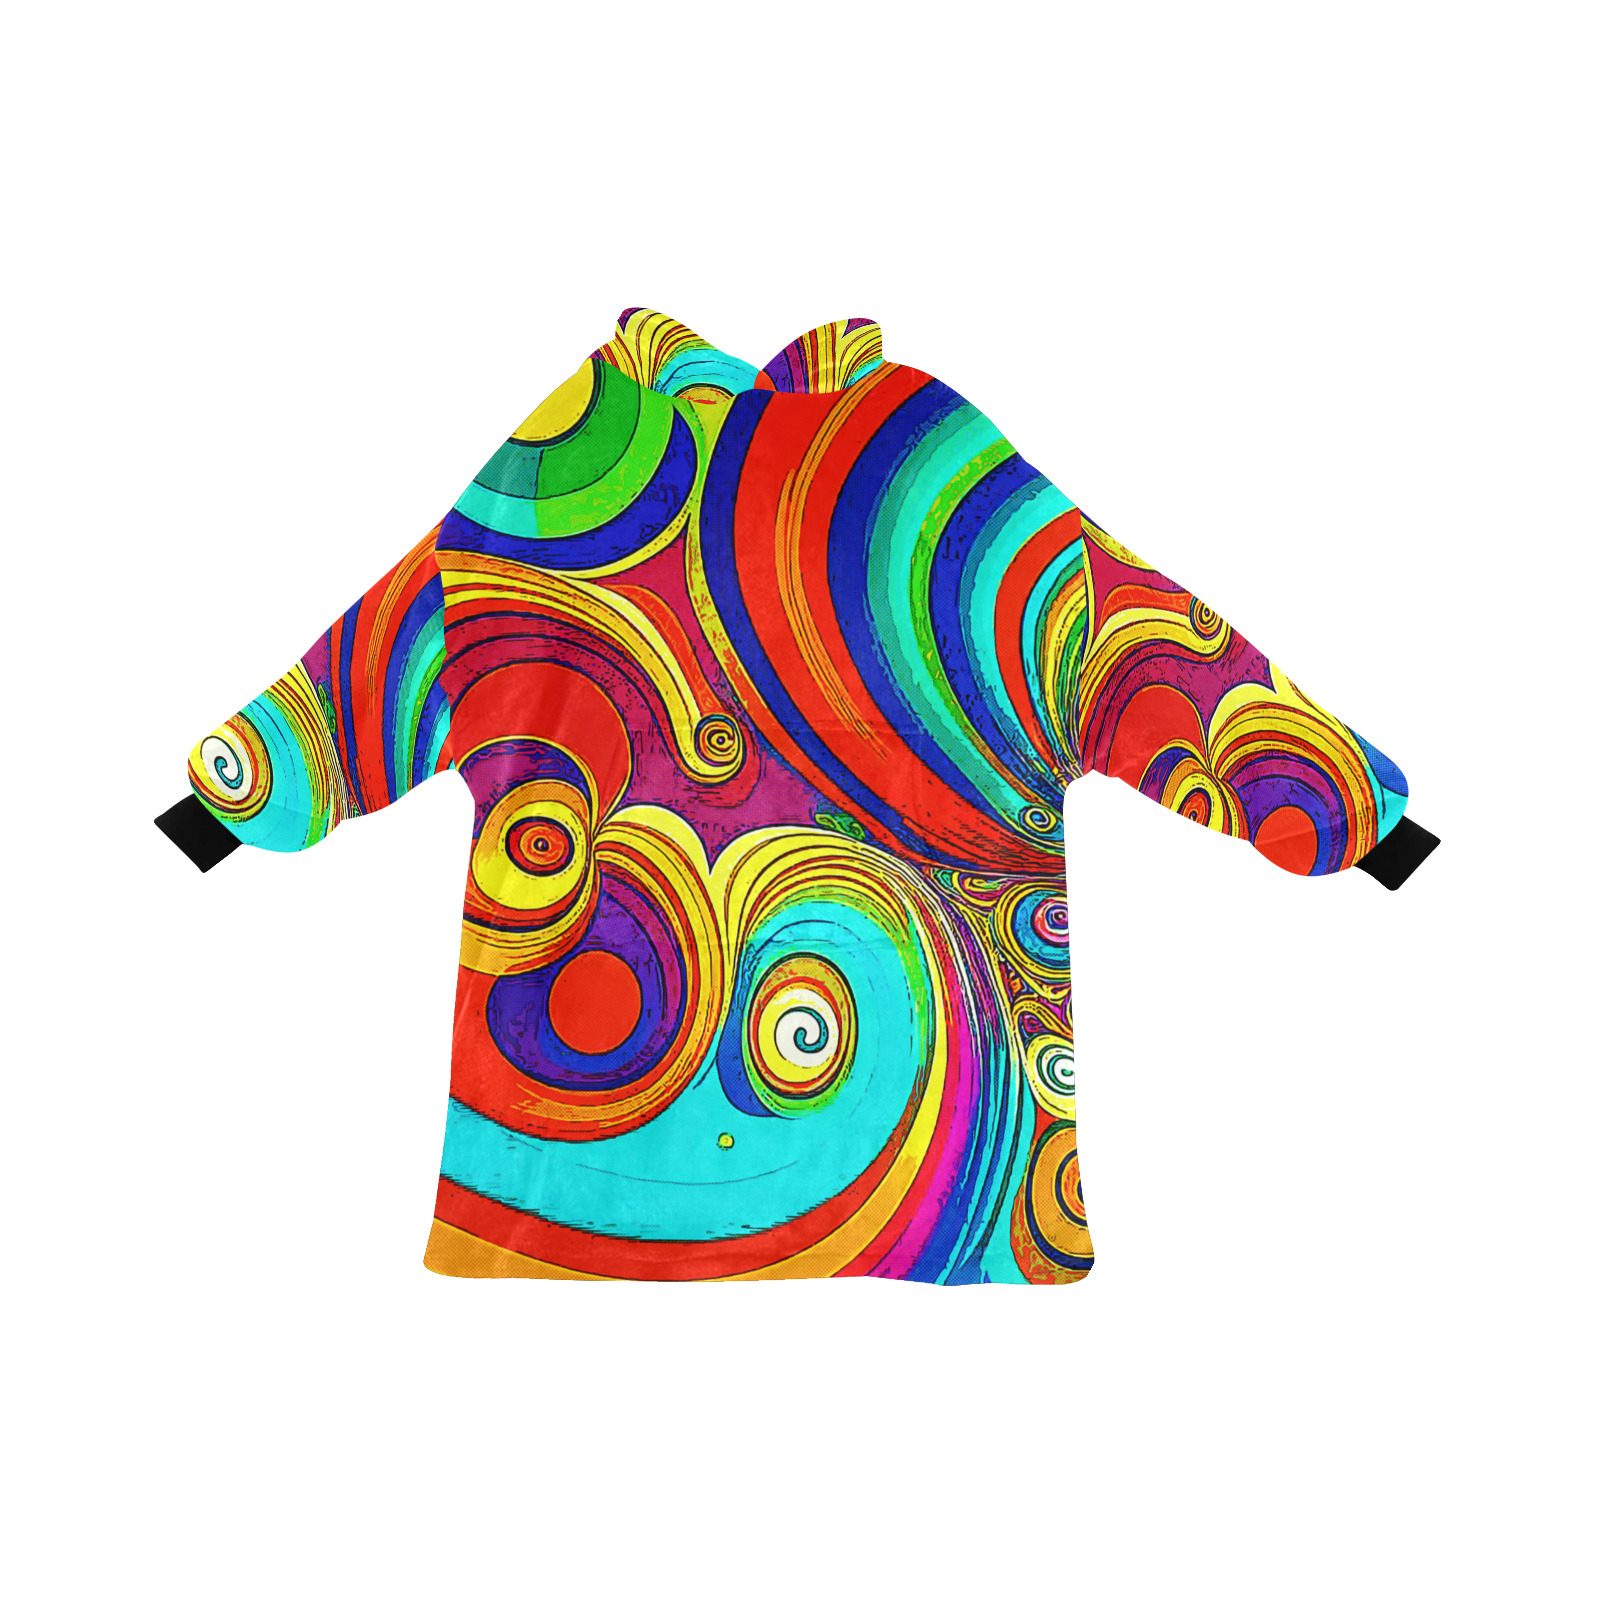 Colorful Groovy Rainbow Swirls Blanket Hoodie for Men